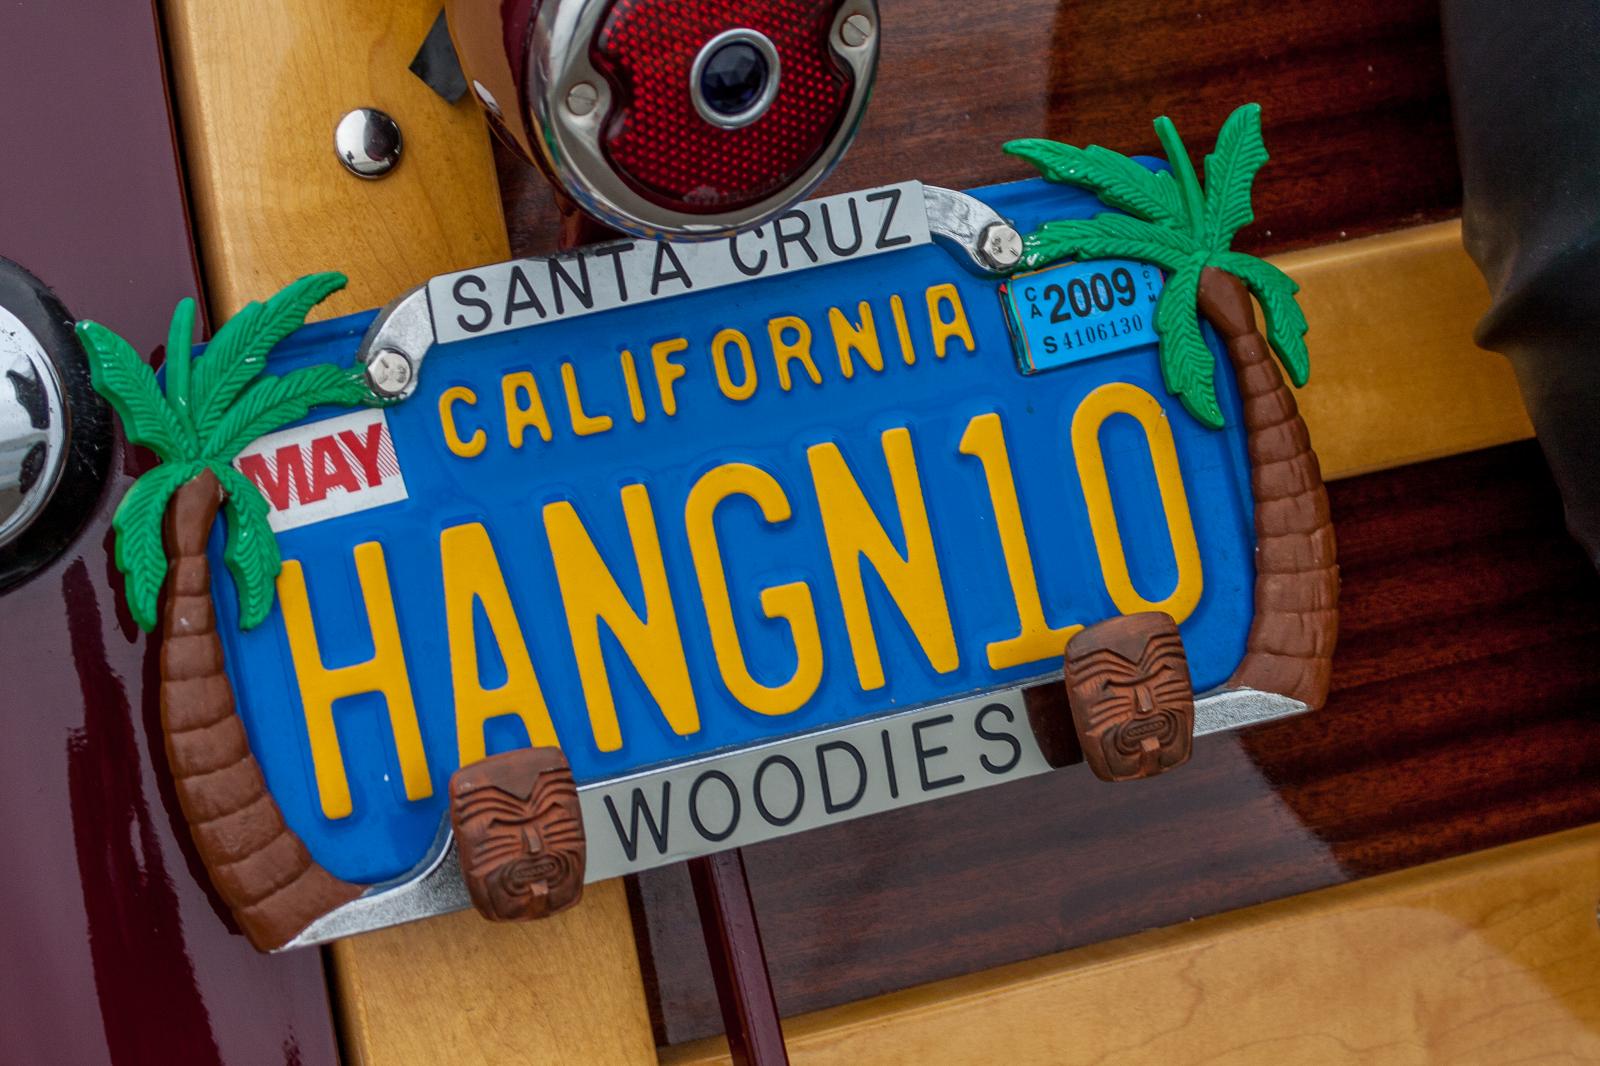 Hang 10 Woodie | Buy this image